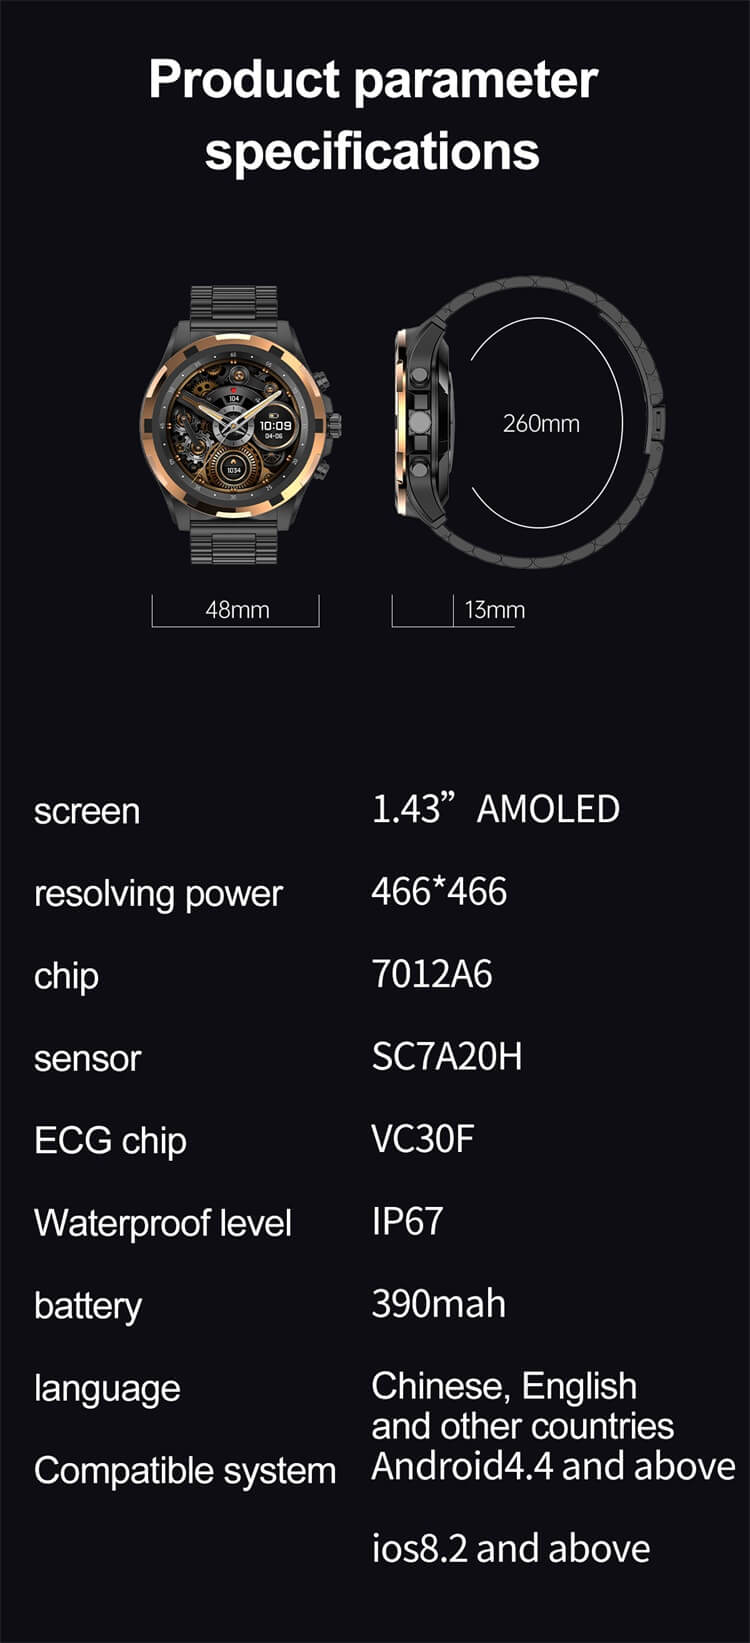 ساعة ذكية VS43 PRO بشاشة AMOLED مقاس 1.43 بوصة وعمر بطارية طويل وحزام من الفولاذ المقاوم للصدأ - Shenzhen Shengye Technology Co.,Ltd